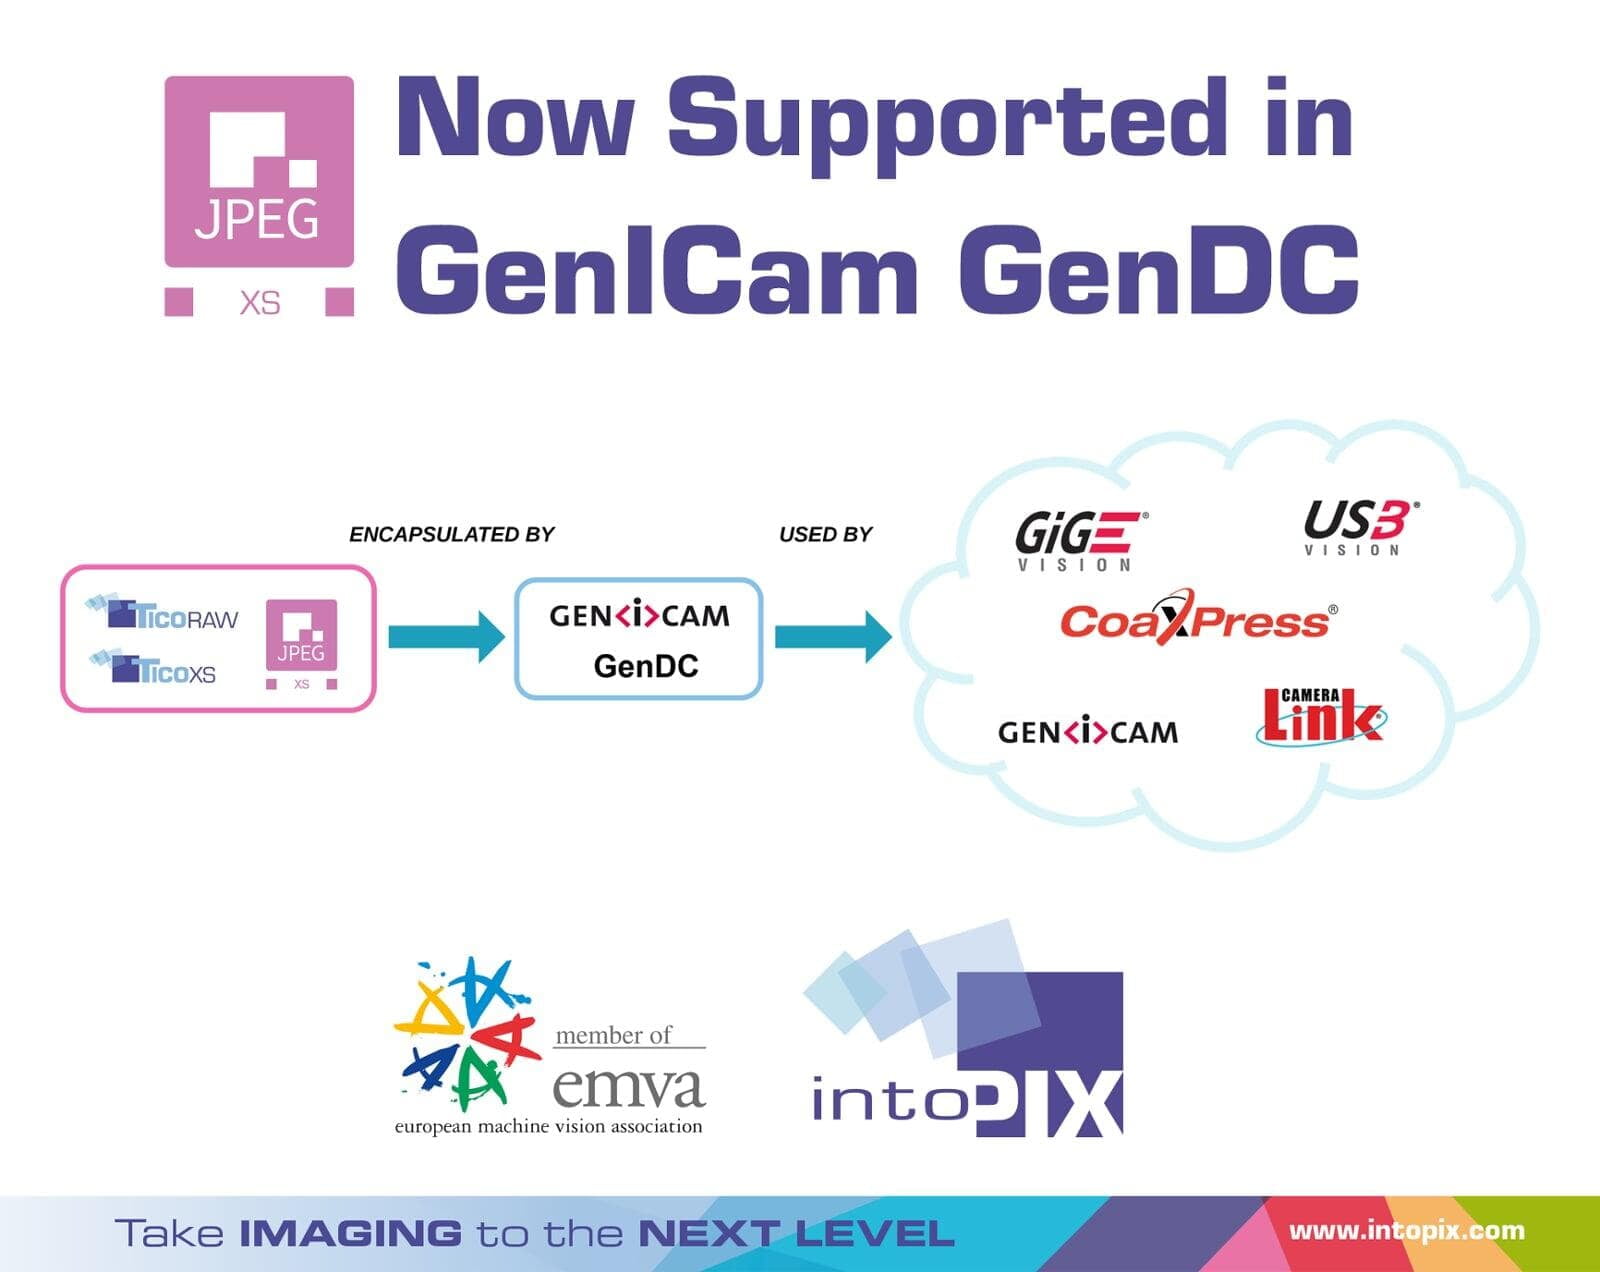 JPEG XSが、EMVAが管理するマシンビジョンのGenICam標準に参加